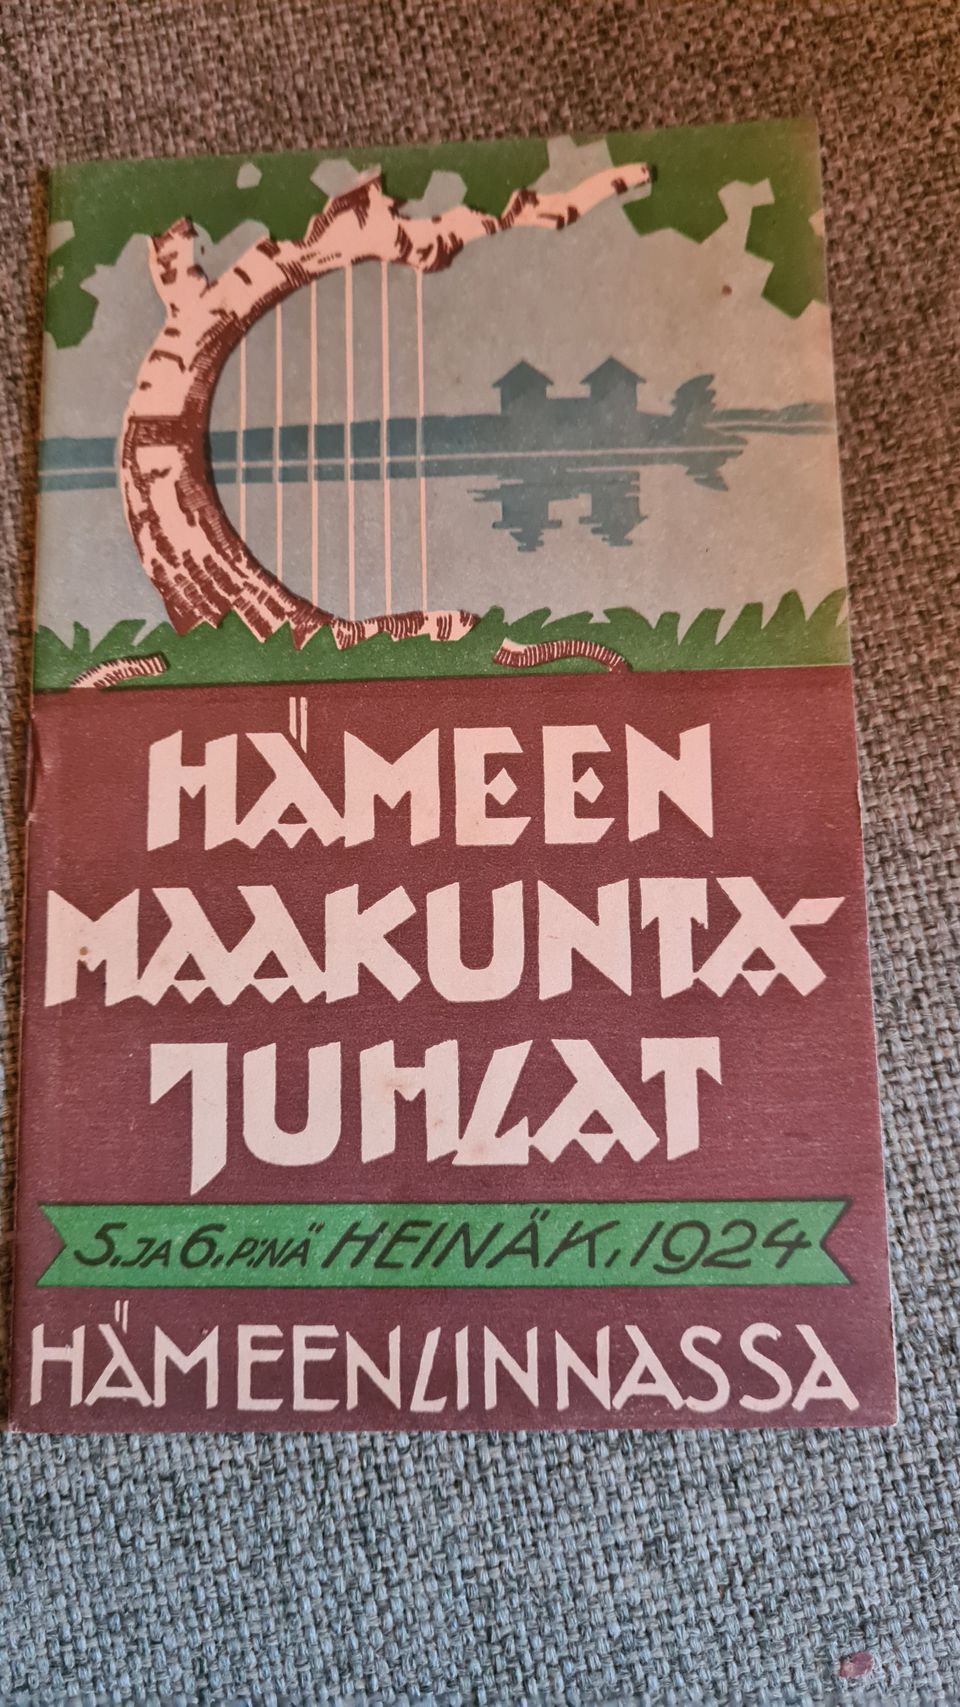 Hämeen maakuntajuhlat 5. ja 6. p:nä heinäk. 1924 Hämeenlinnassa